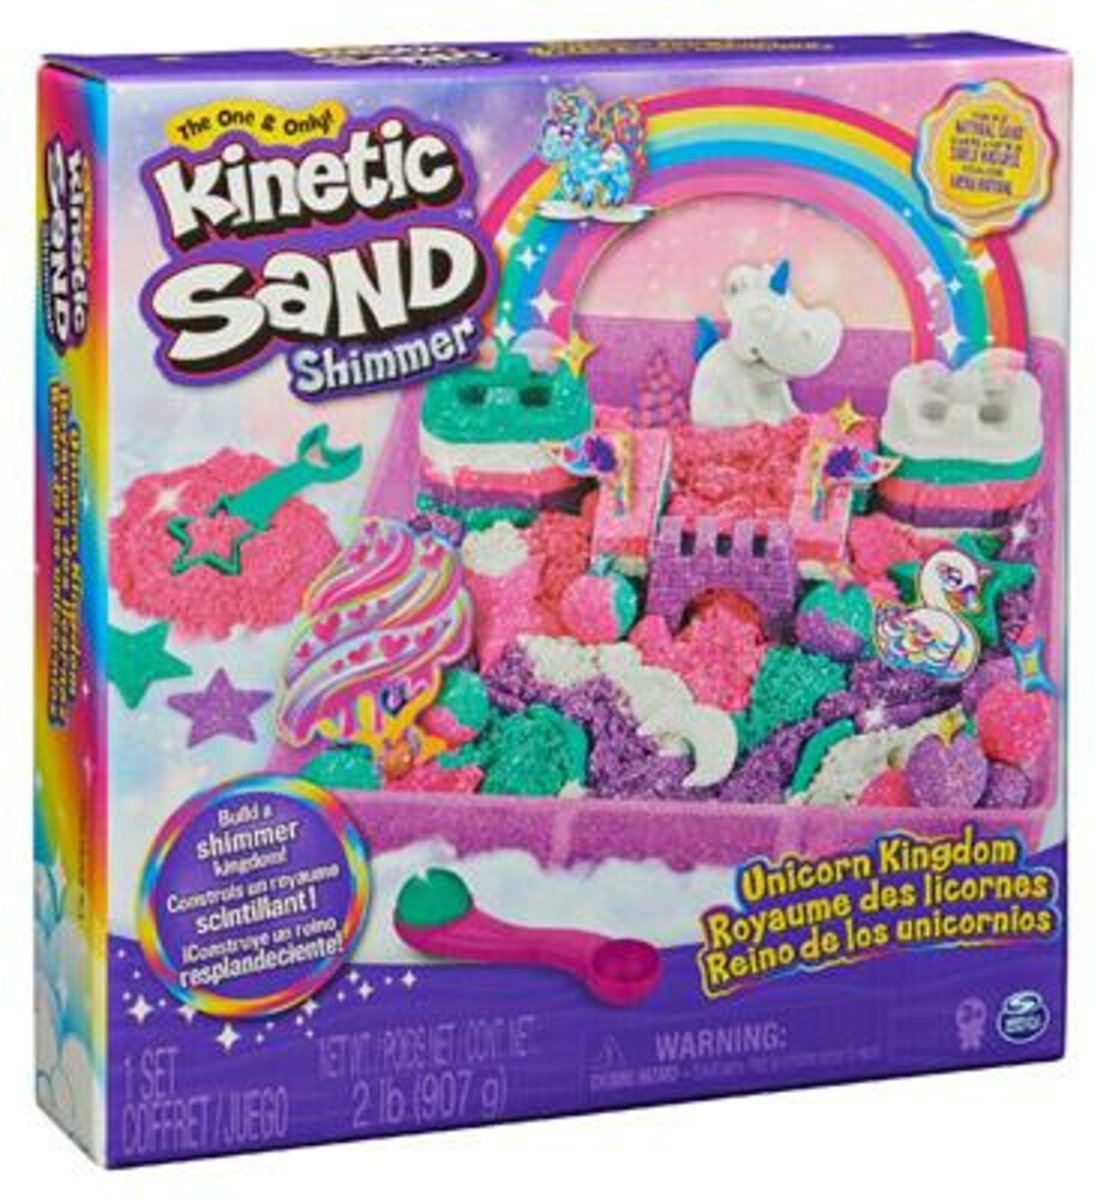 Kinetic Sand Shimmer - Eenhoorn Koninkrijk-speelset met 907 g glanzend speelzand 8 stuks gereedschap - Sensorisch speelgoed - Kinetic Sand